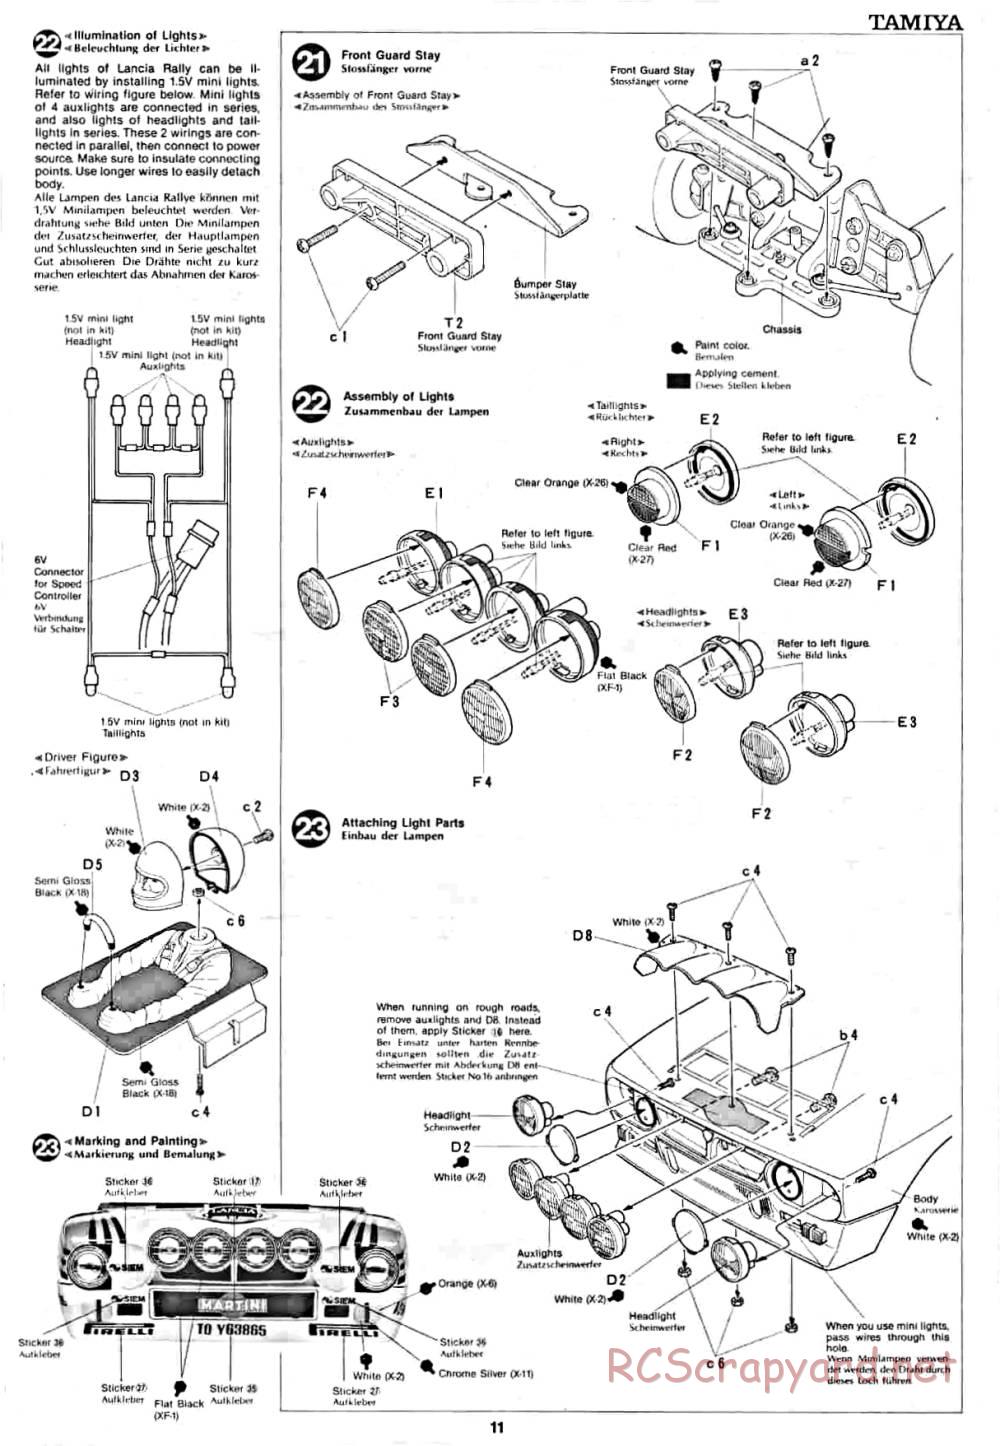 Tamiya - Lancia Rally - 58040 - Manual - Page 11